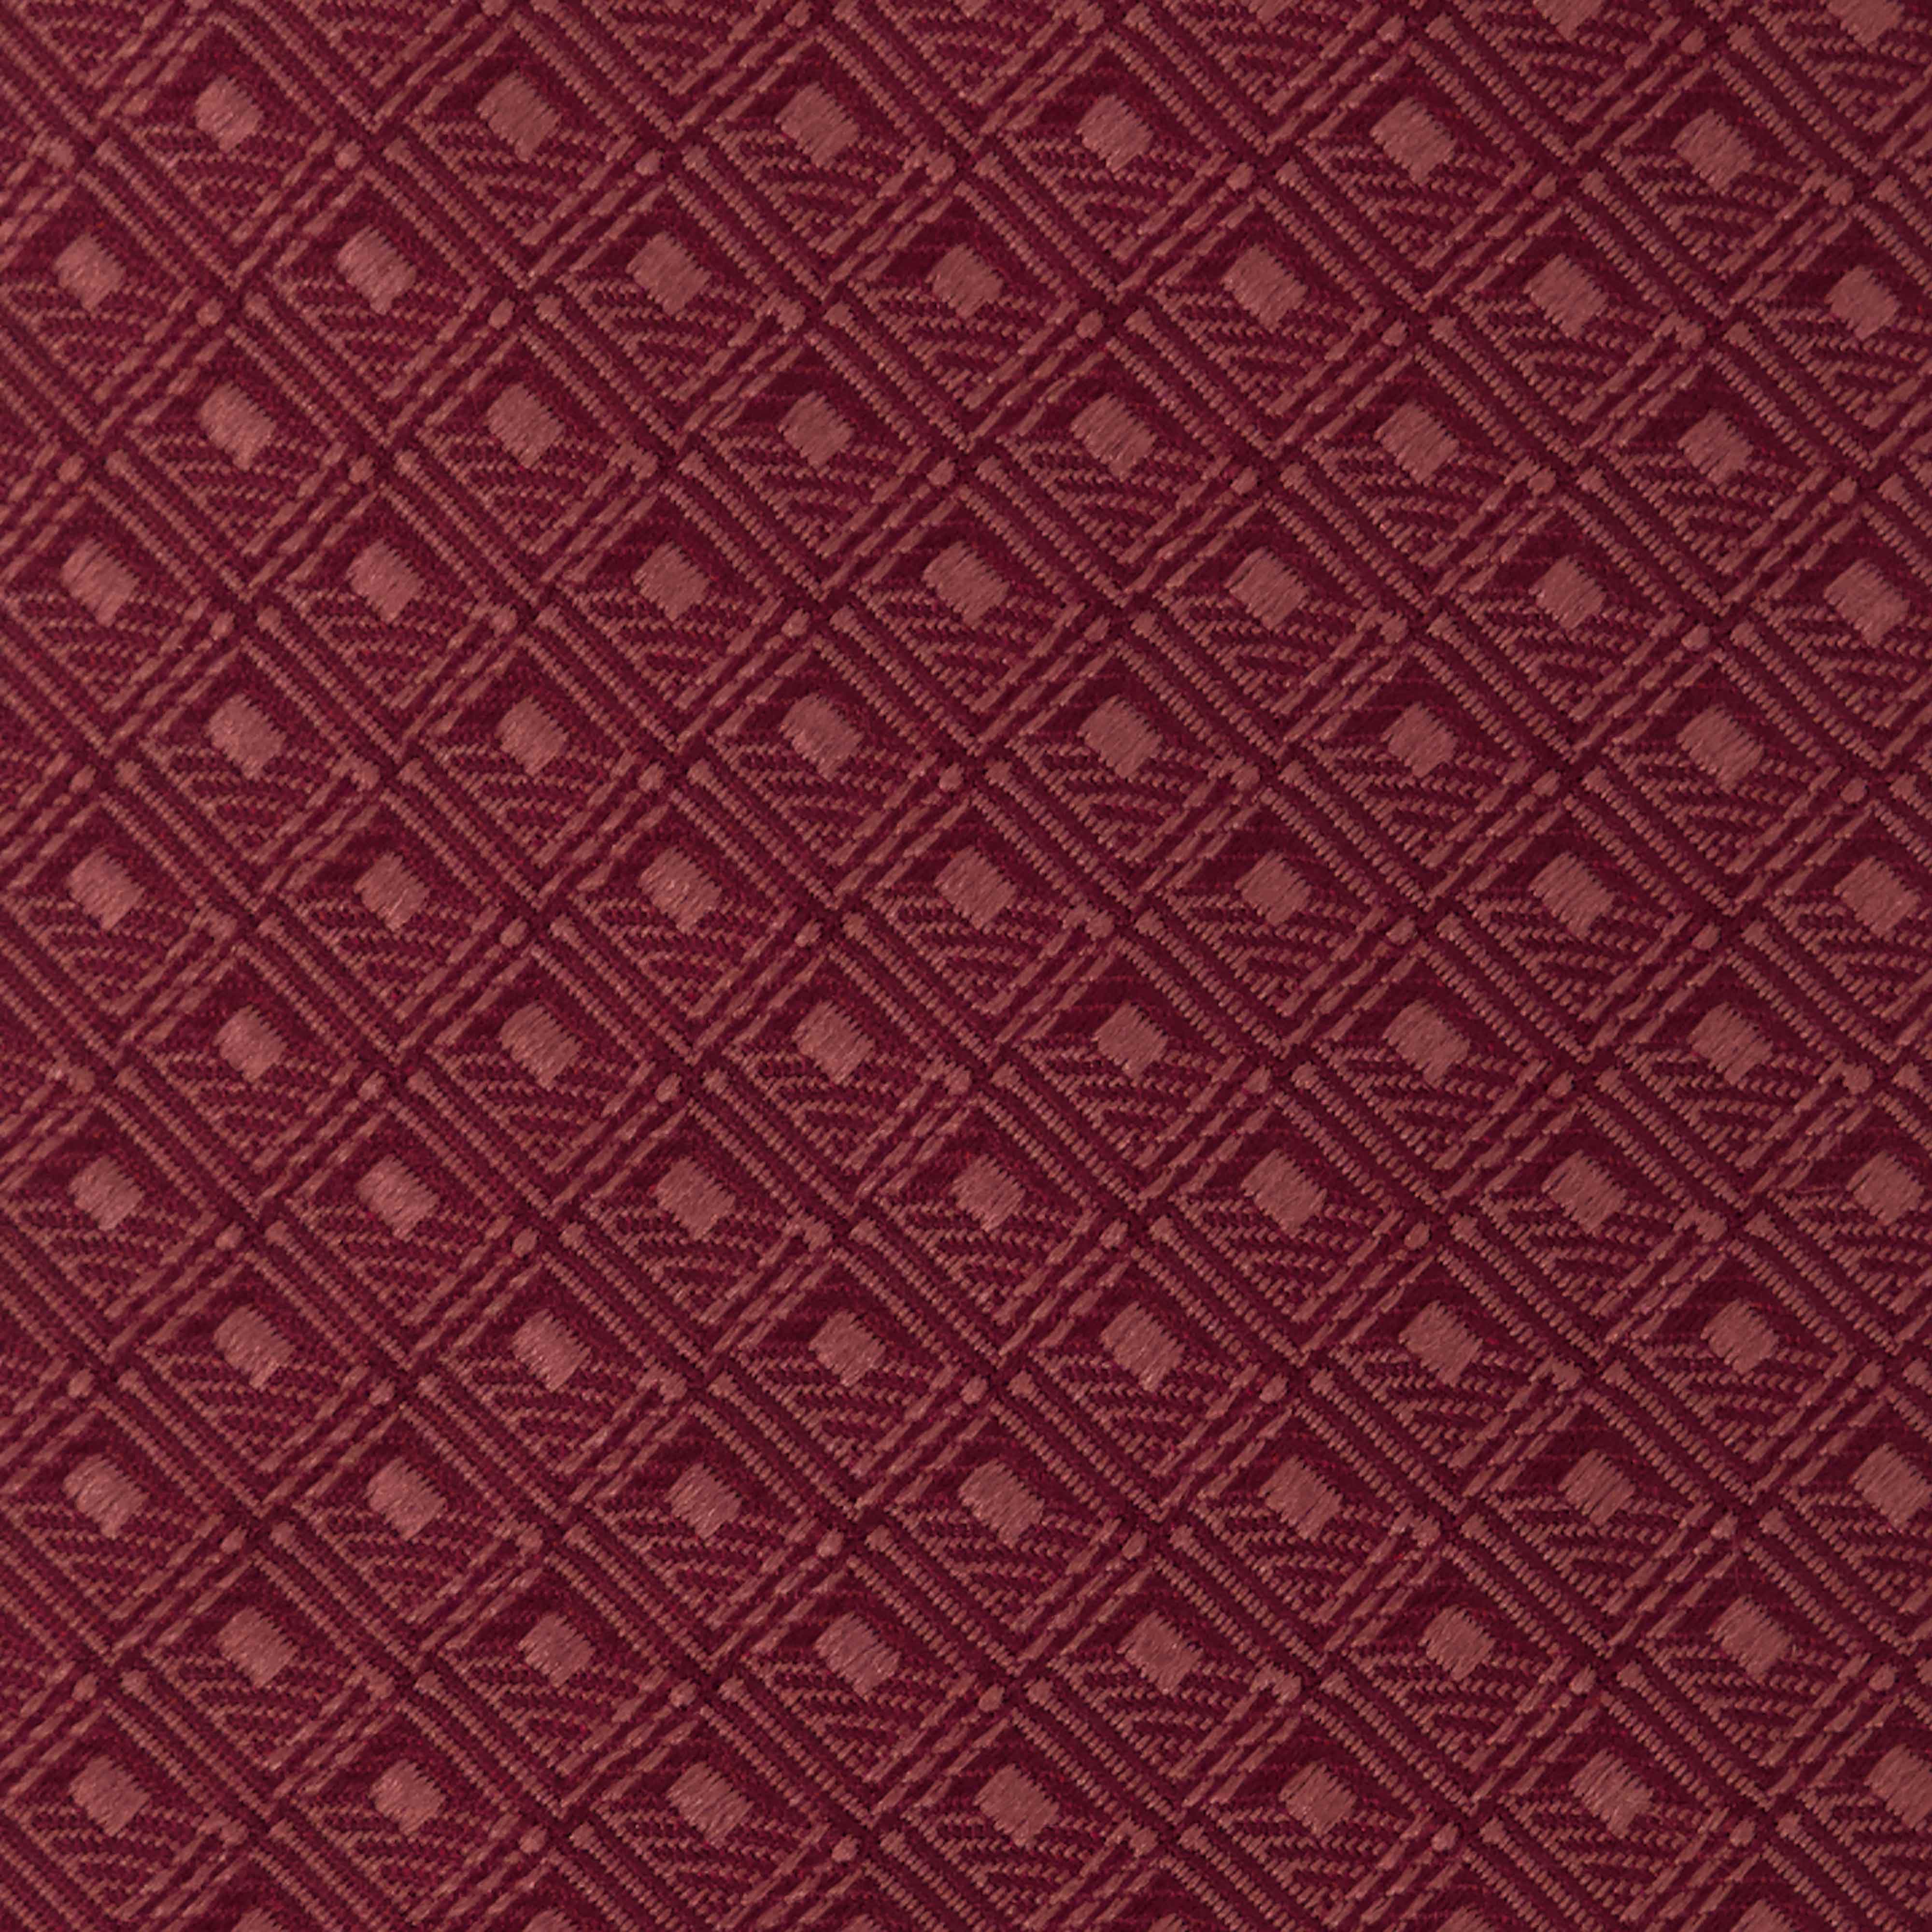 Burgundy Diamond Tie and Pocket square - MenDo Ties